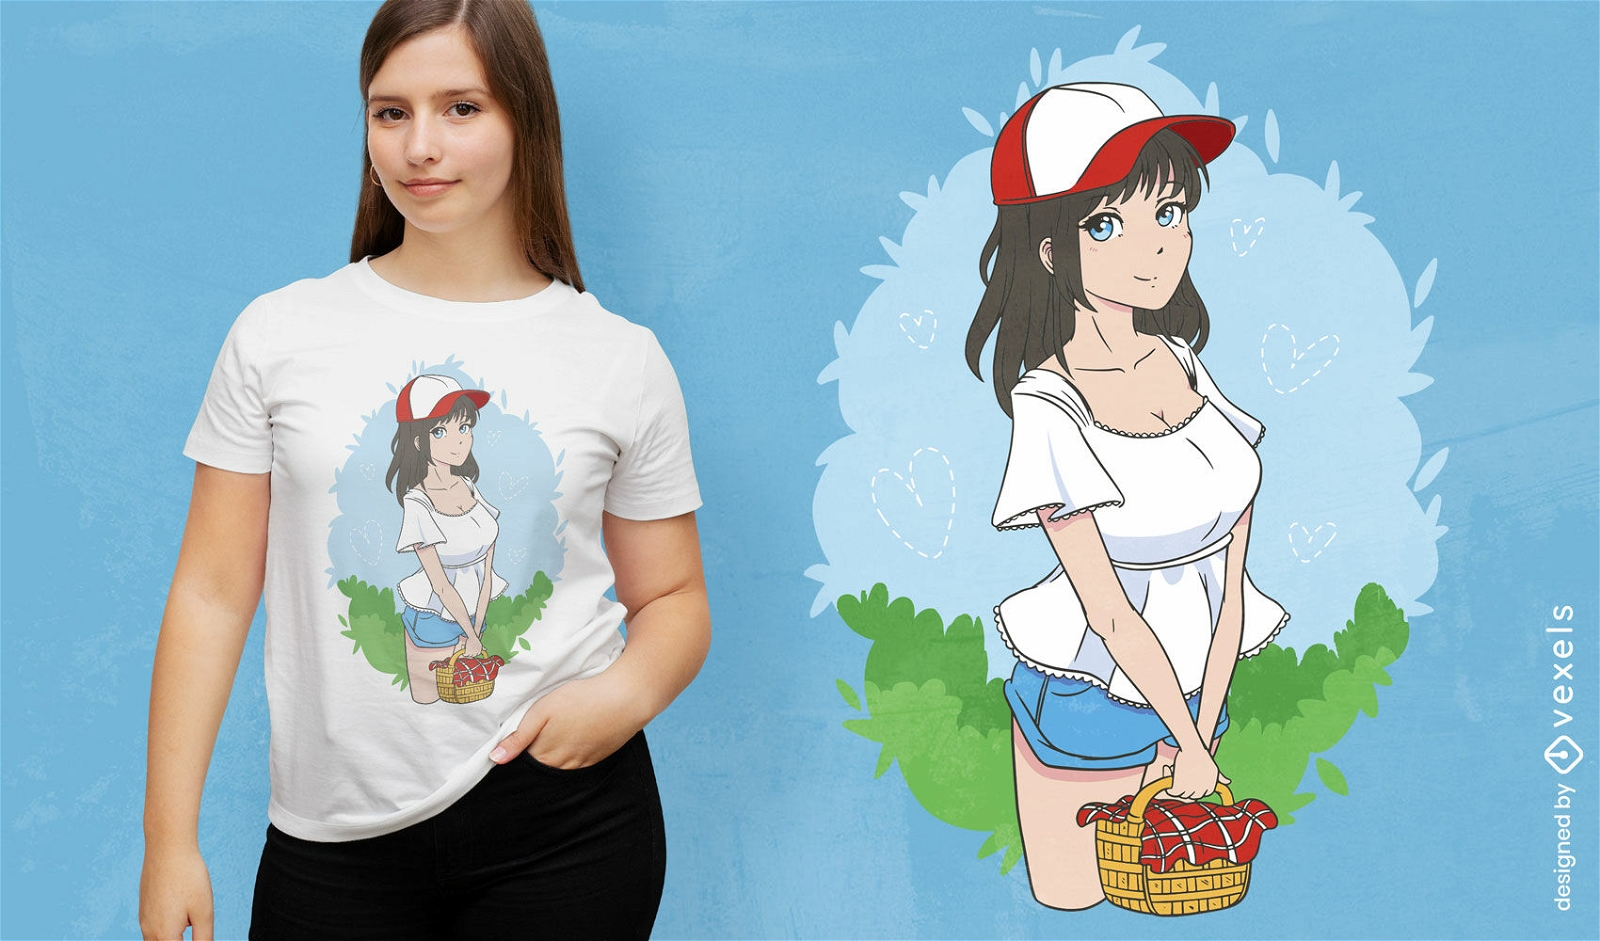 Dise?o de camiseta de chica anime de picnic.